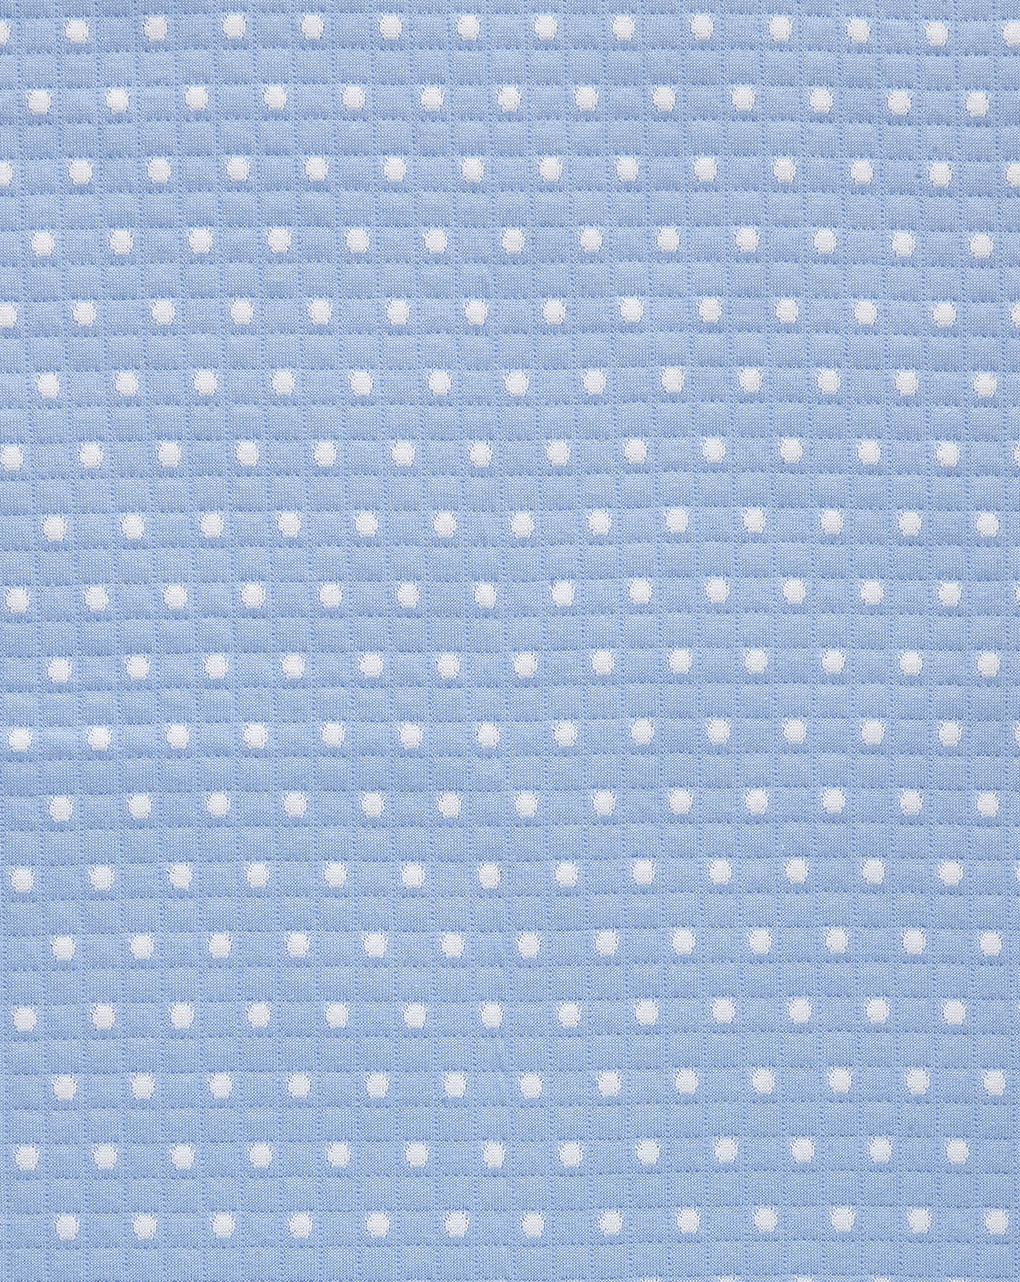 Cobertor de cama de verão azul claro com borda branca - Prénatal